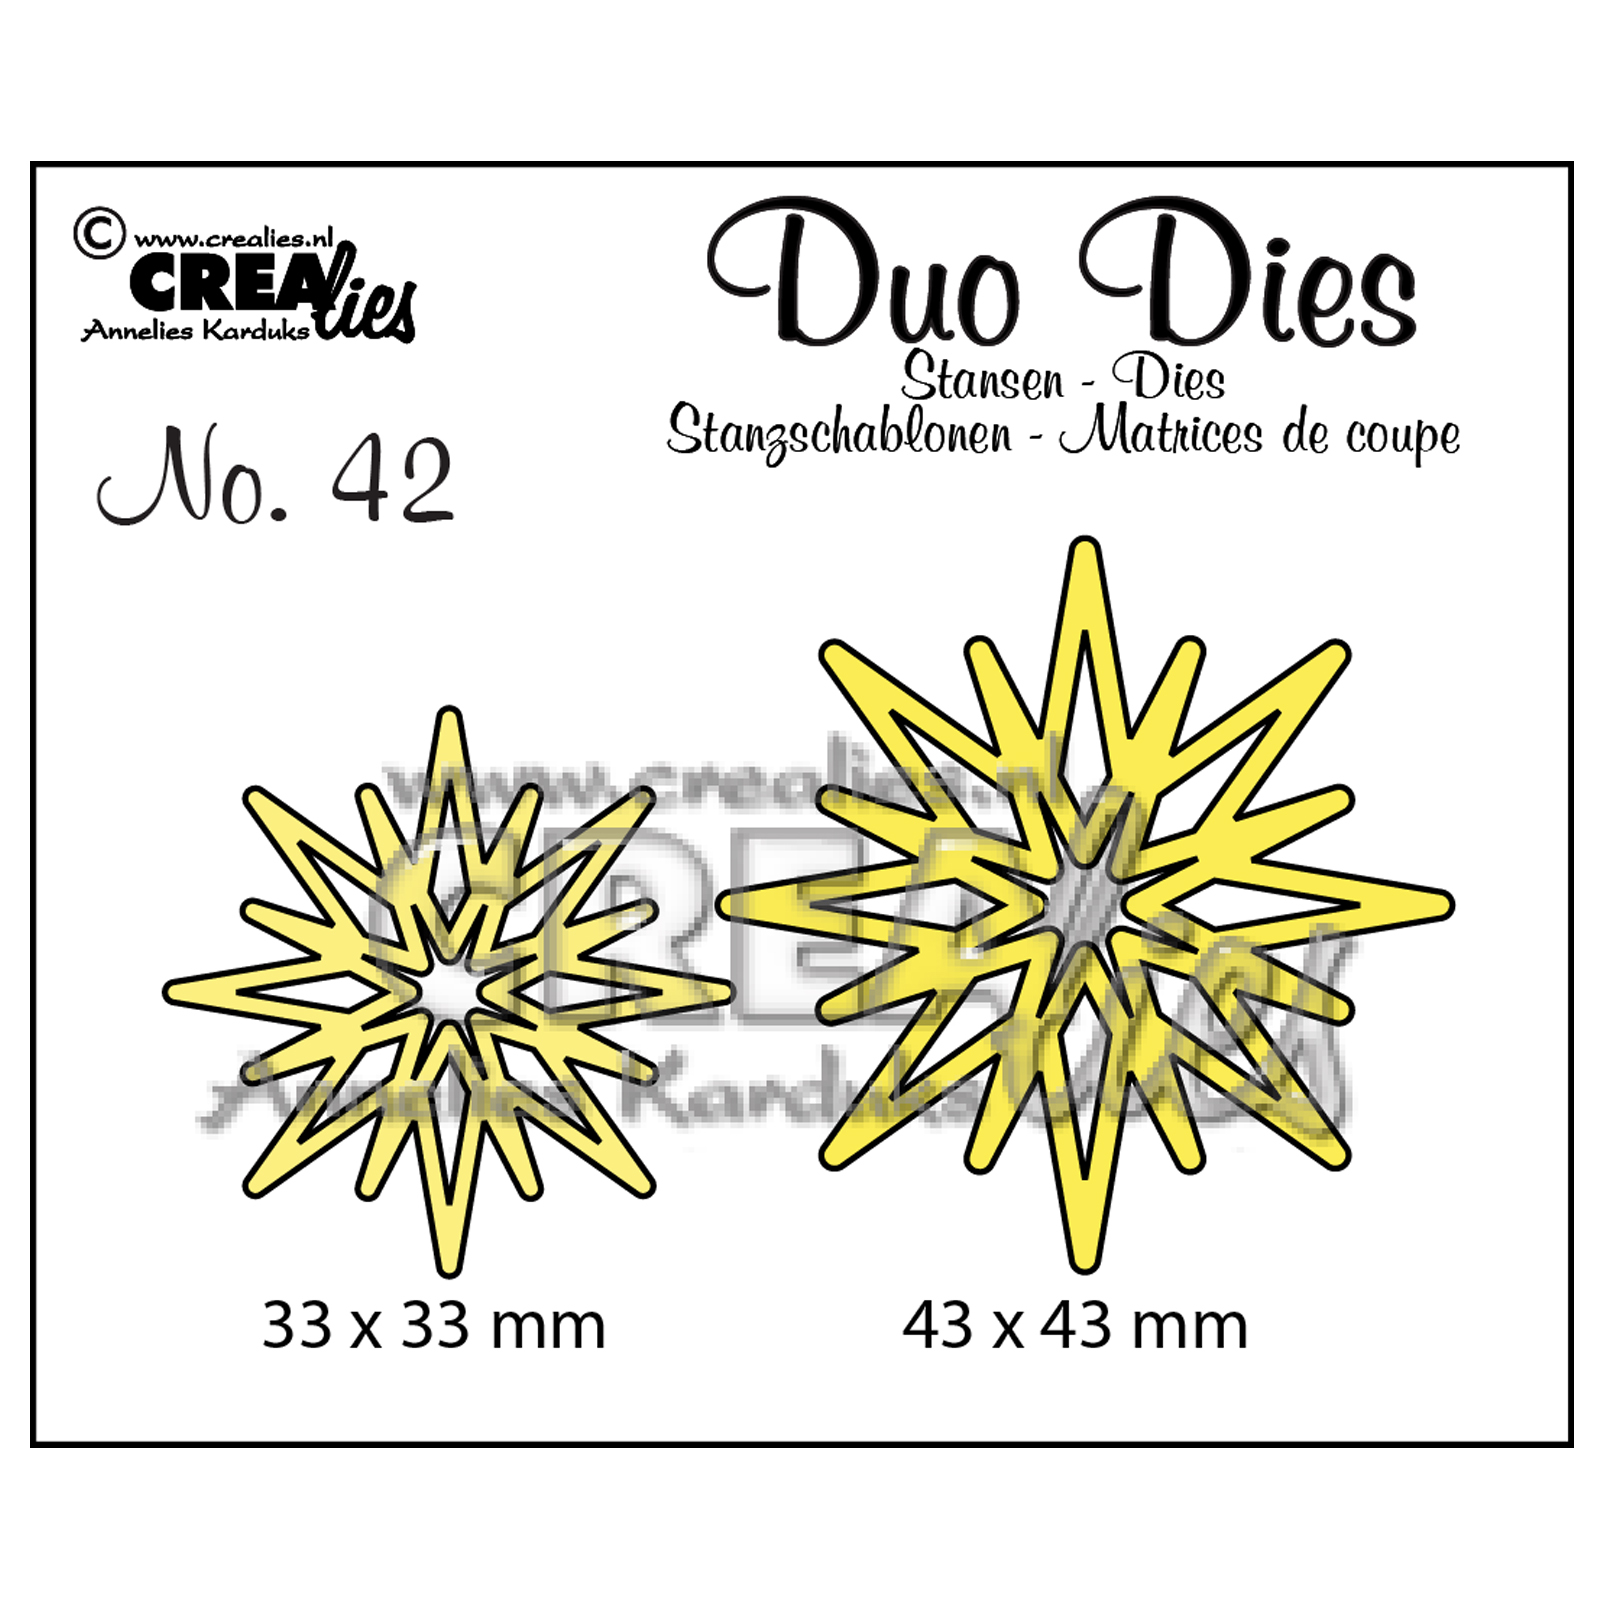 Crealies • Duo Dies no.42 stars